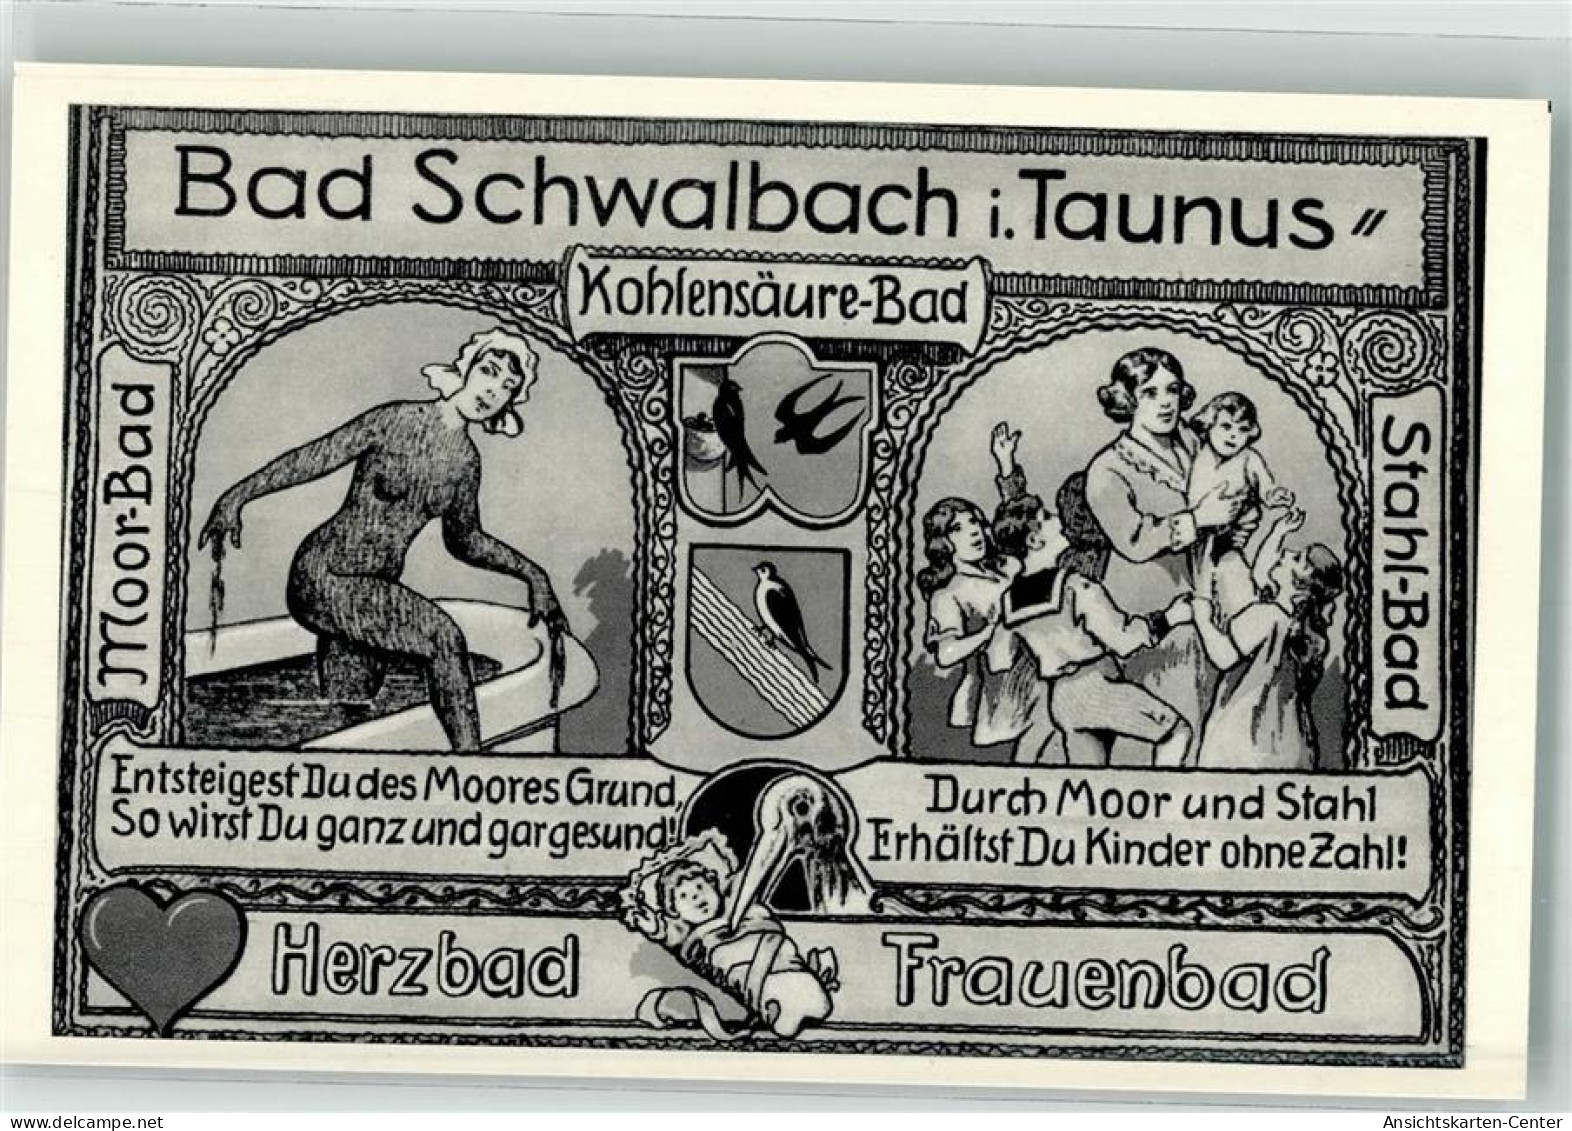 39766006 - Bad Schwalbach - Bad Schwalbach